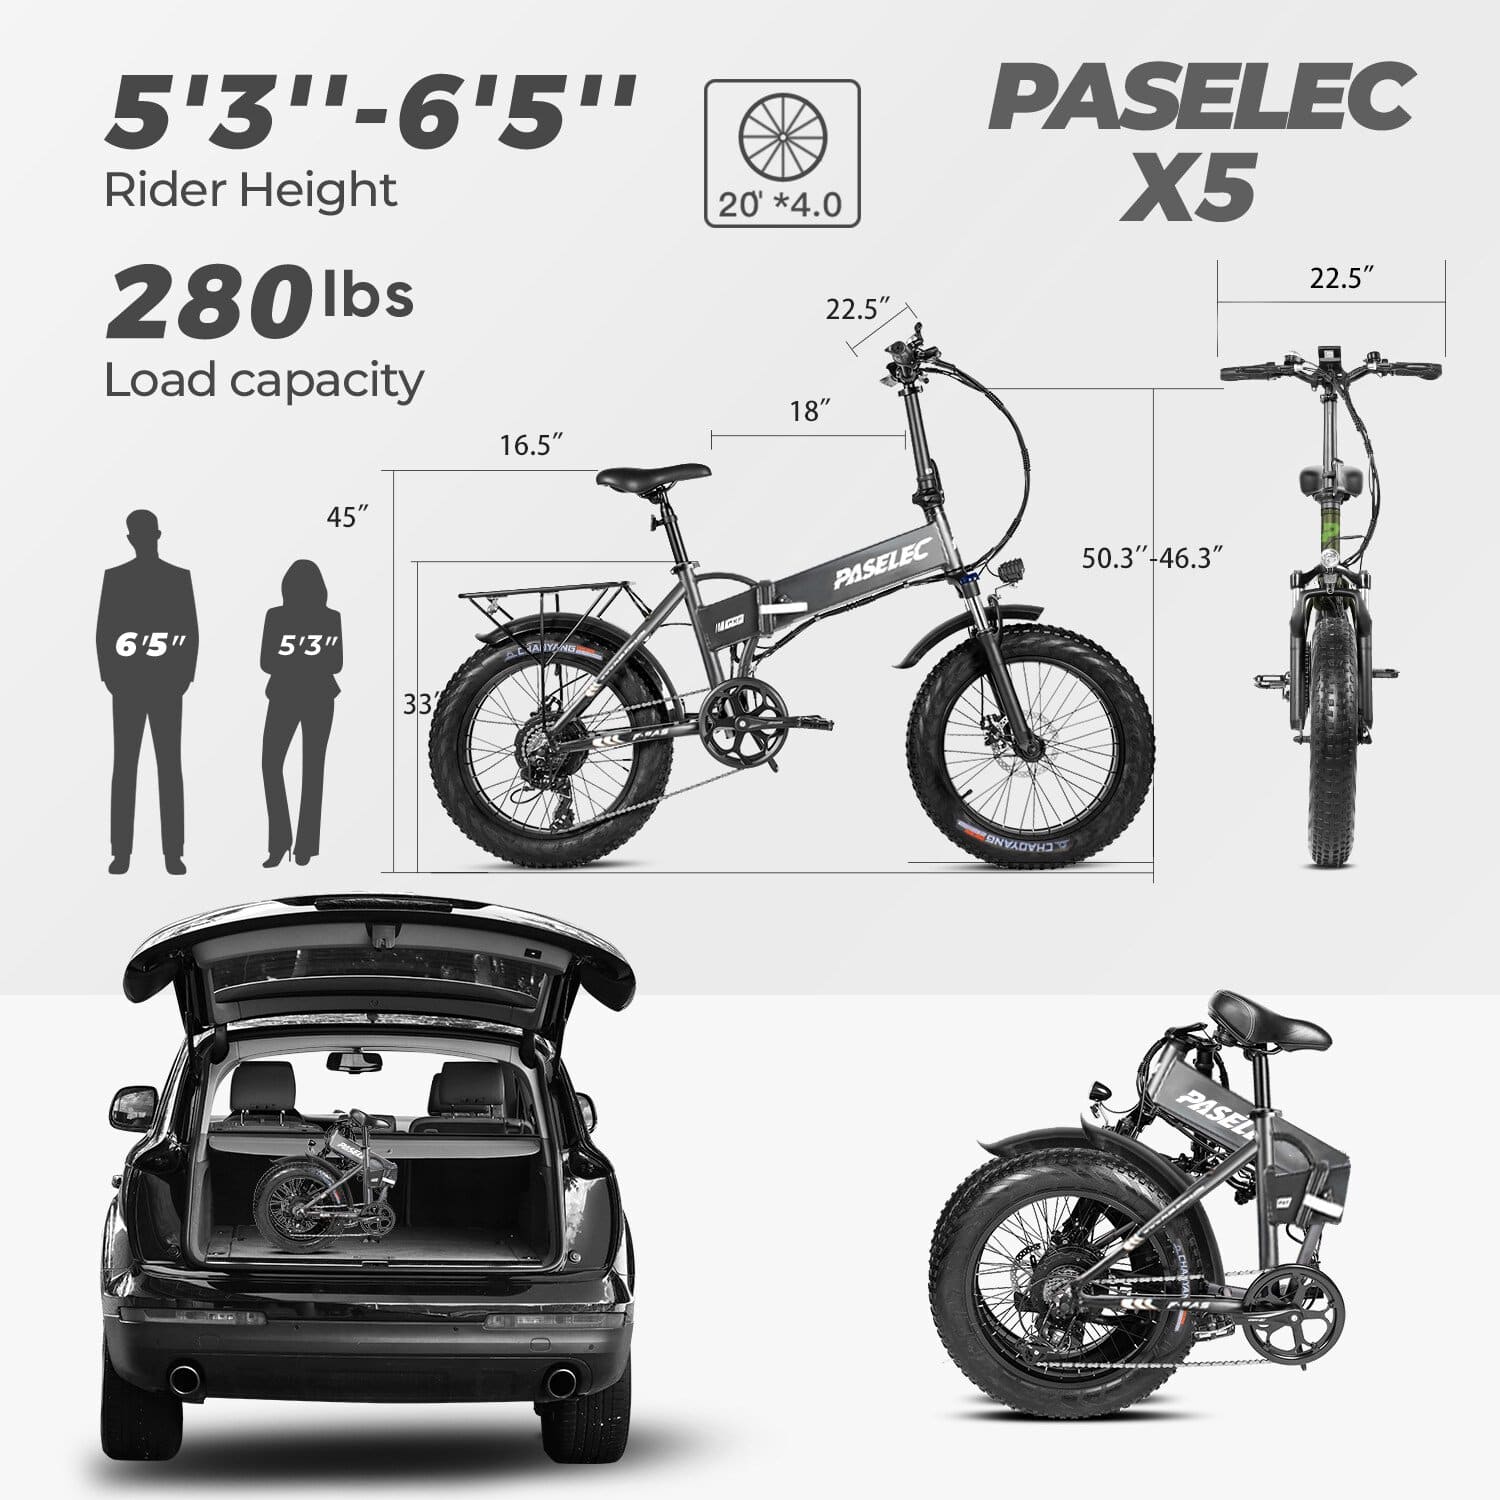 Paselec PX5 48V/10.4Ah 500W Folding Fat Tire Electric Bike